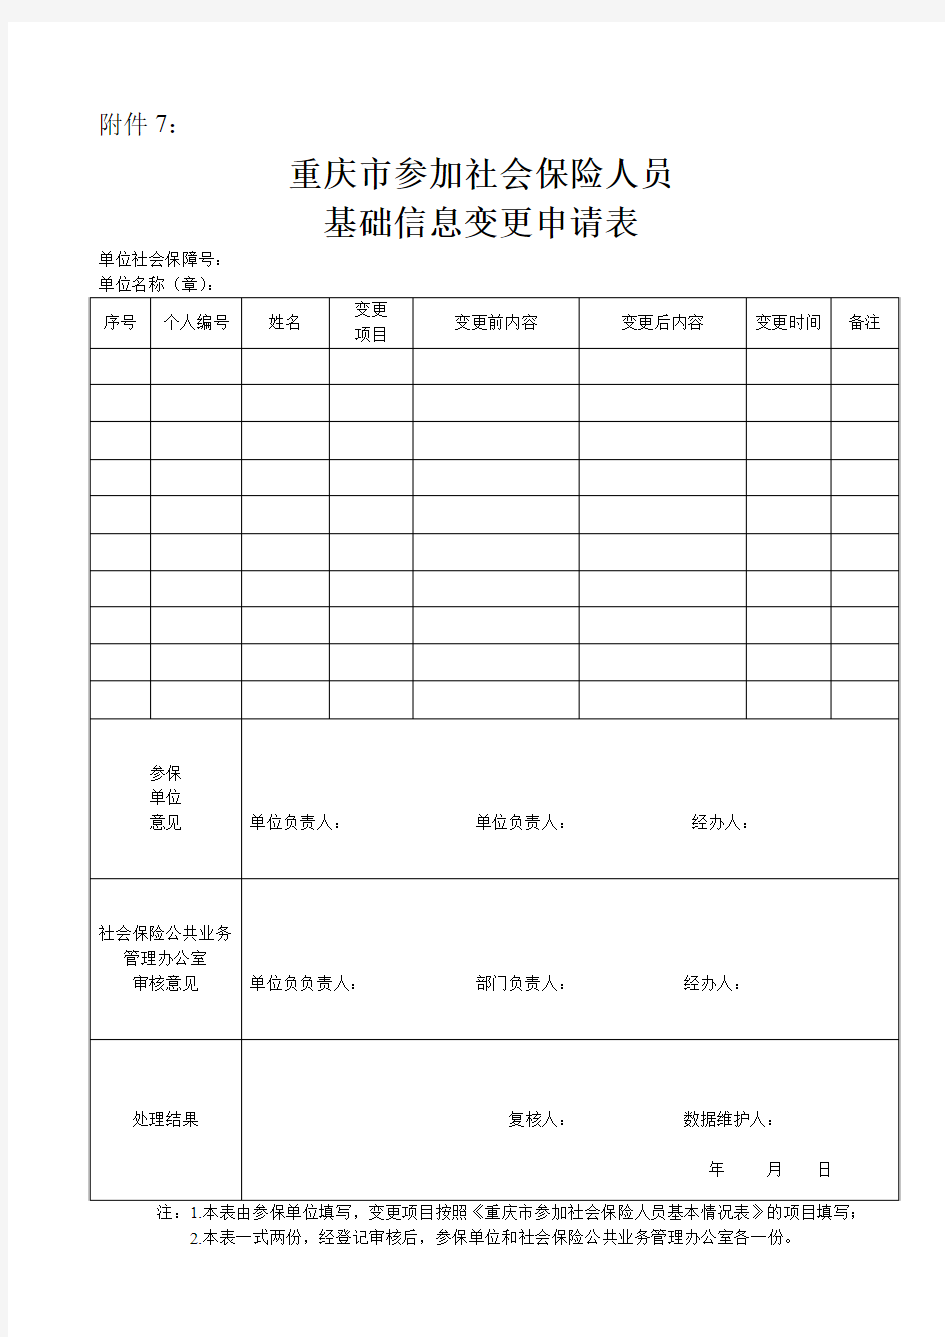 重庆市参加社会保险人员基础信息变更申报表